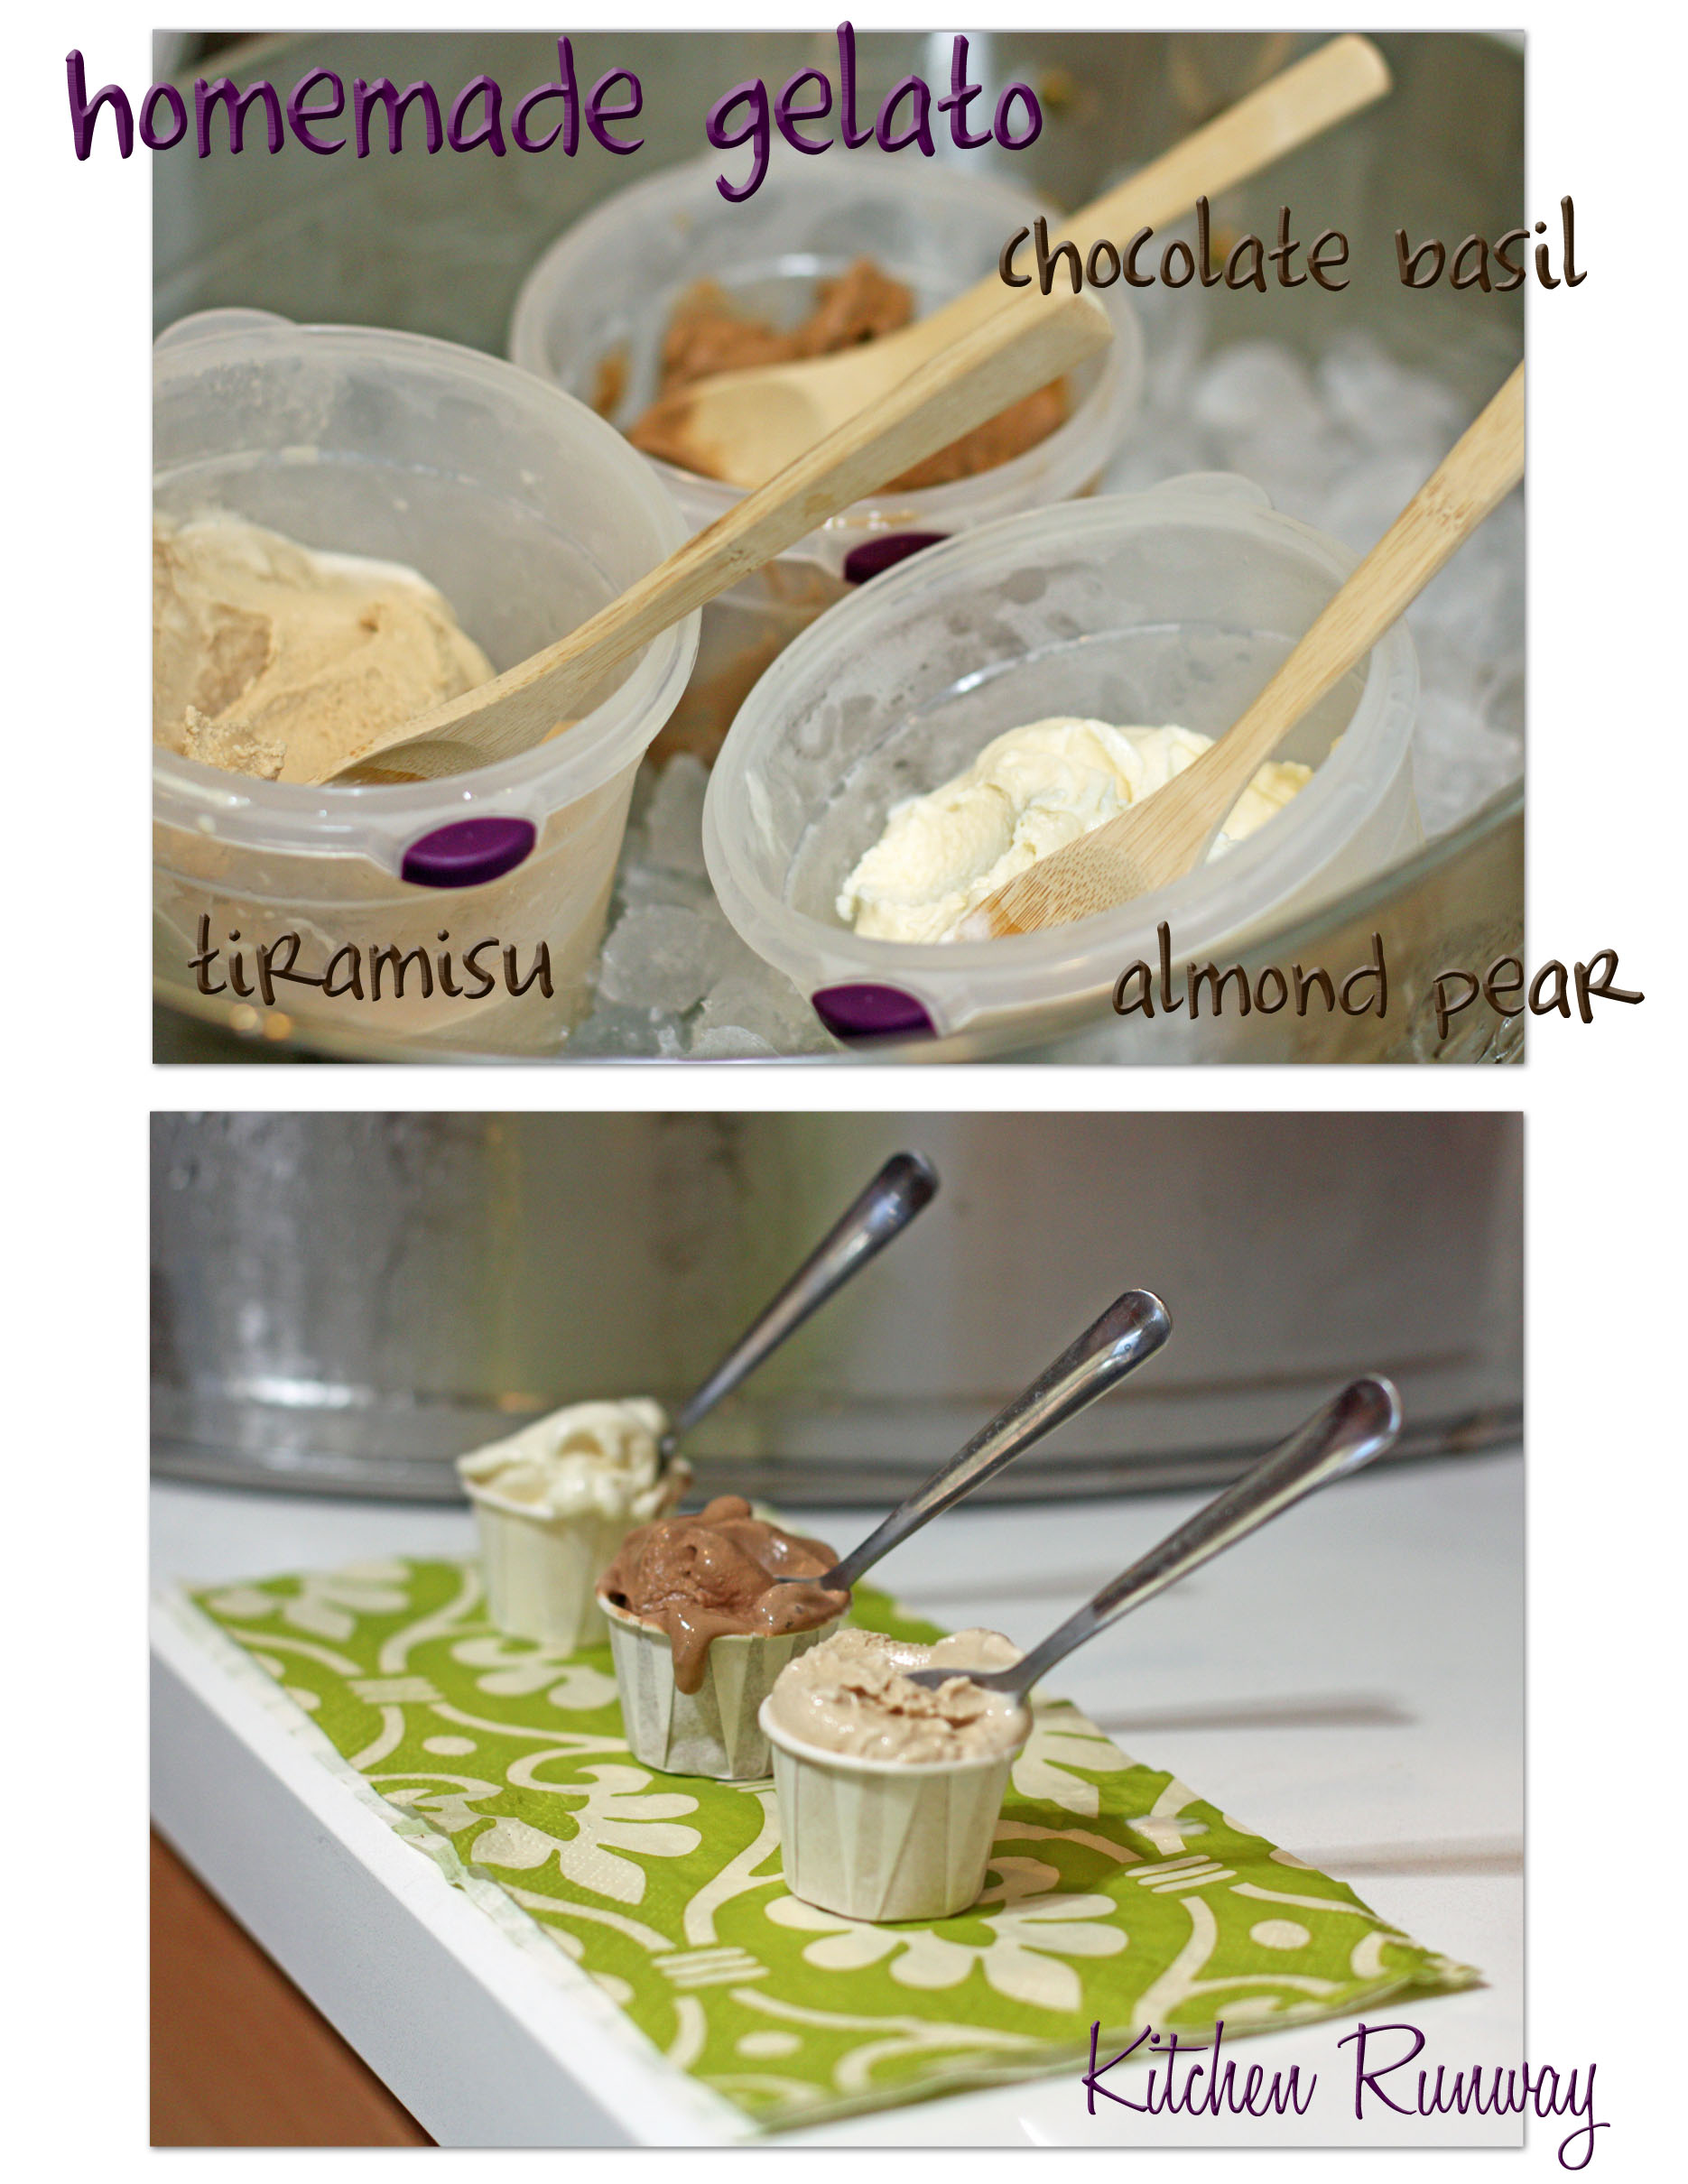 tiramisu, chocolate basil and almond pear gelato